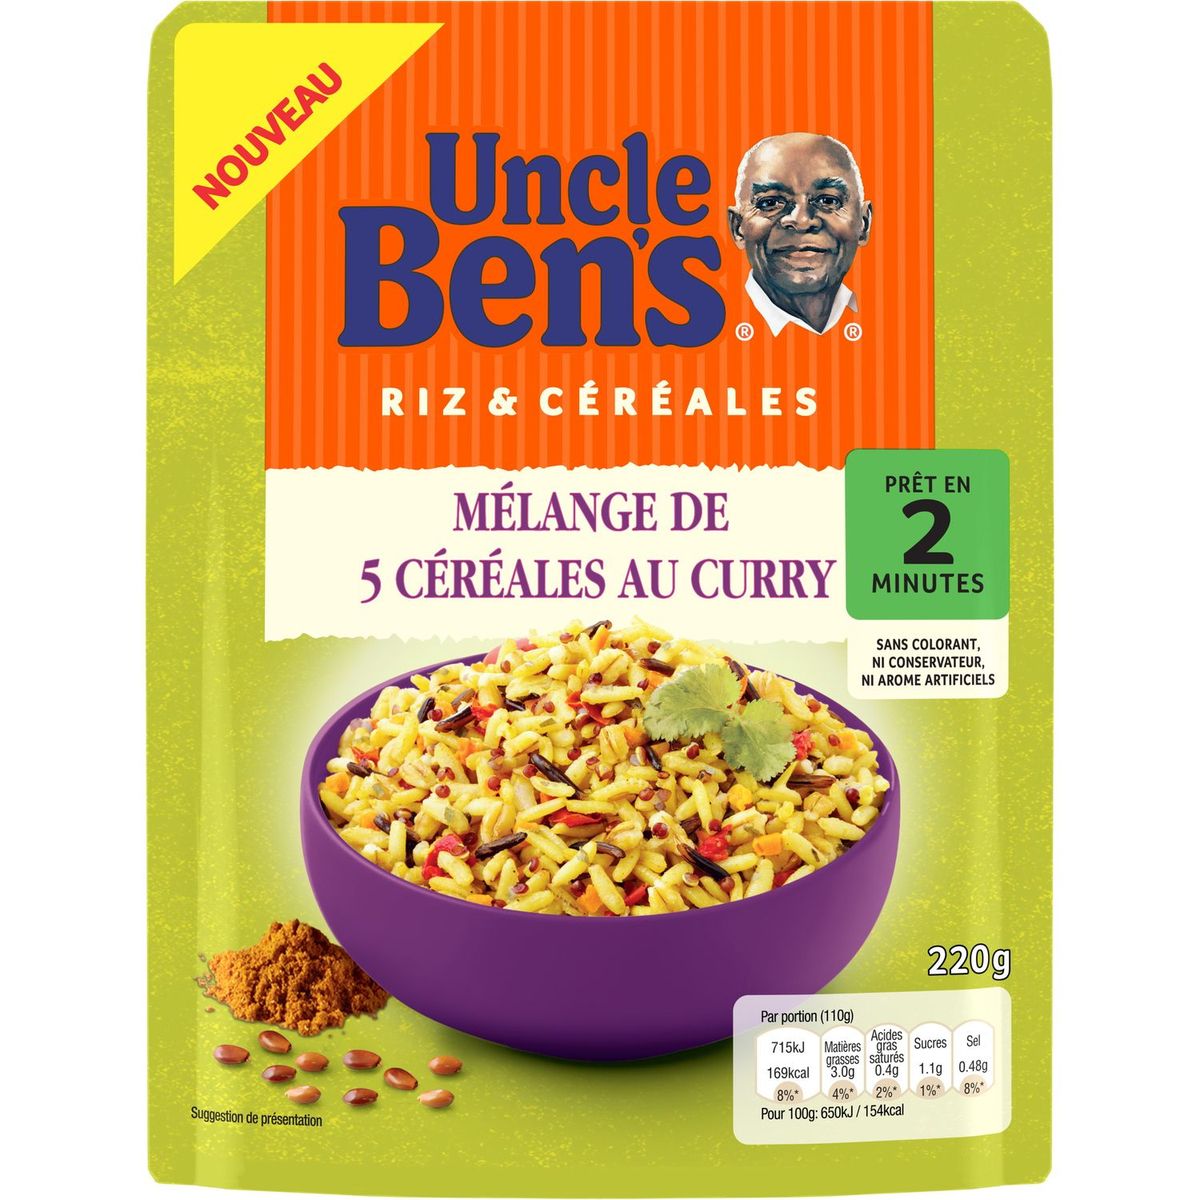 UNCLE BEN'S Uncle Bens mélange 5 céréales curry 220g pas cher 